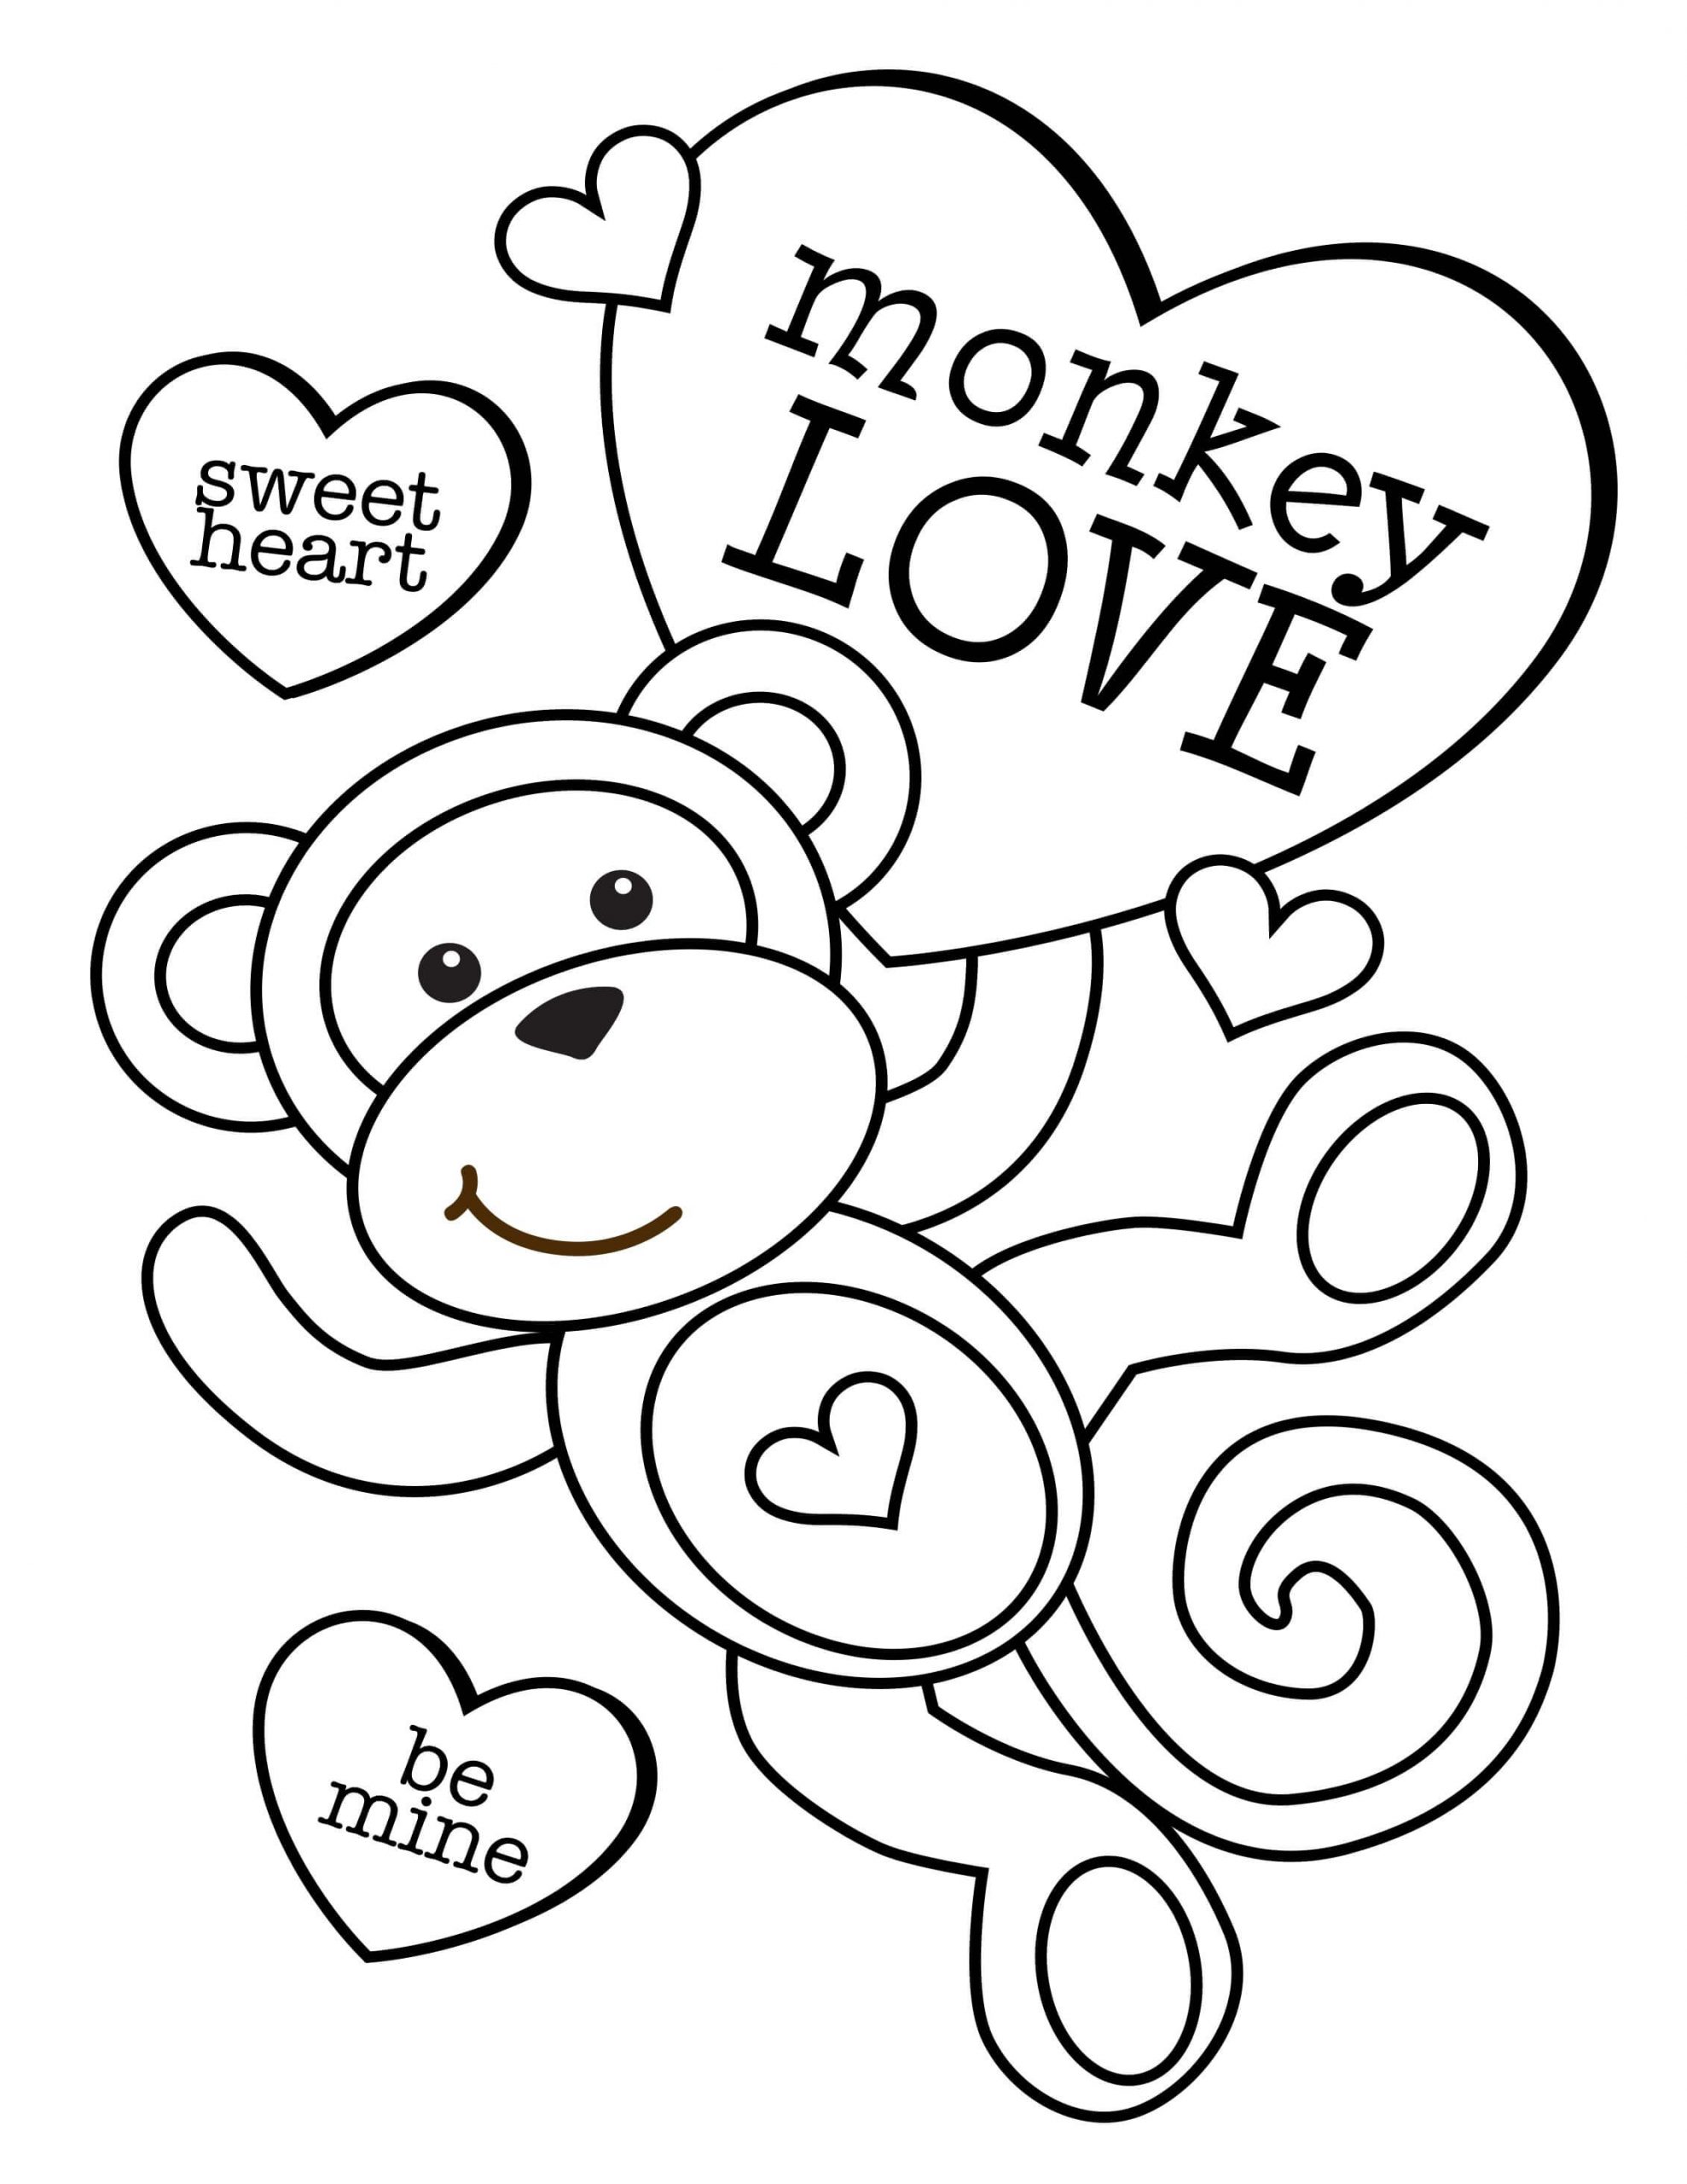 발렌타인 하트를 가진 원숭이 coloring page